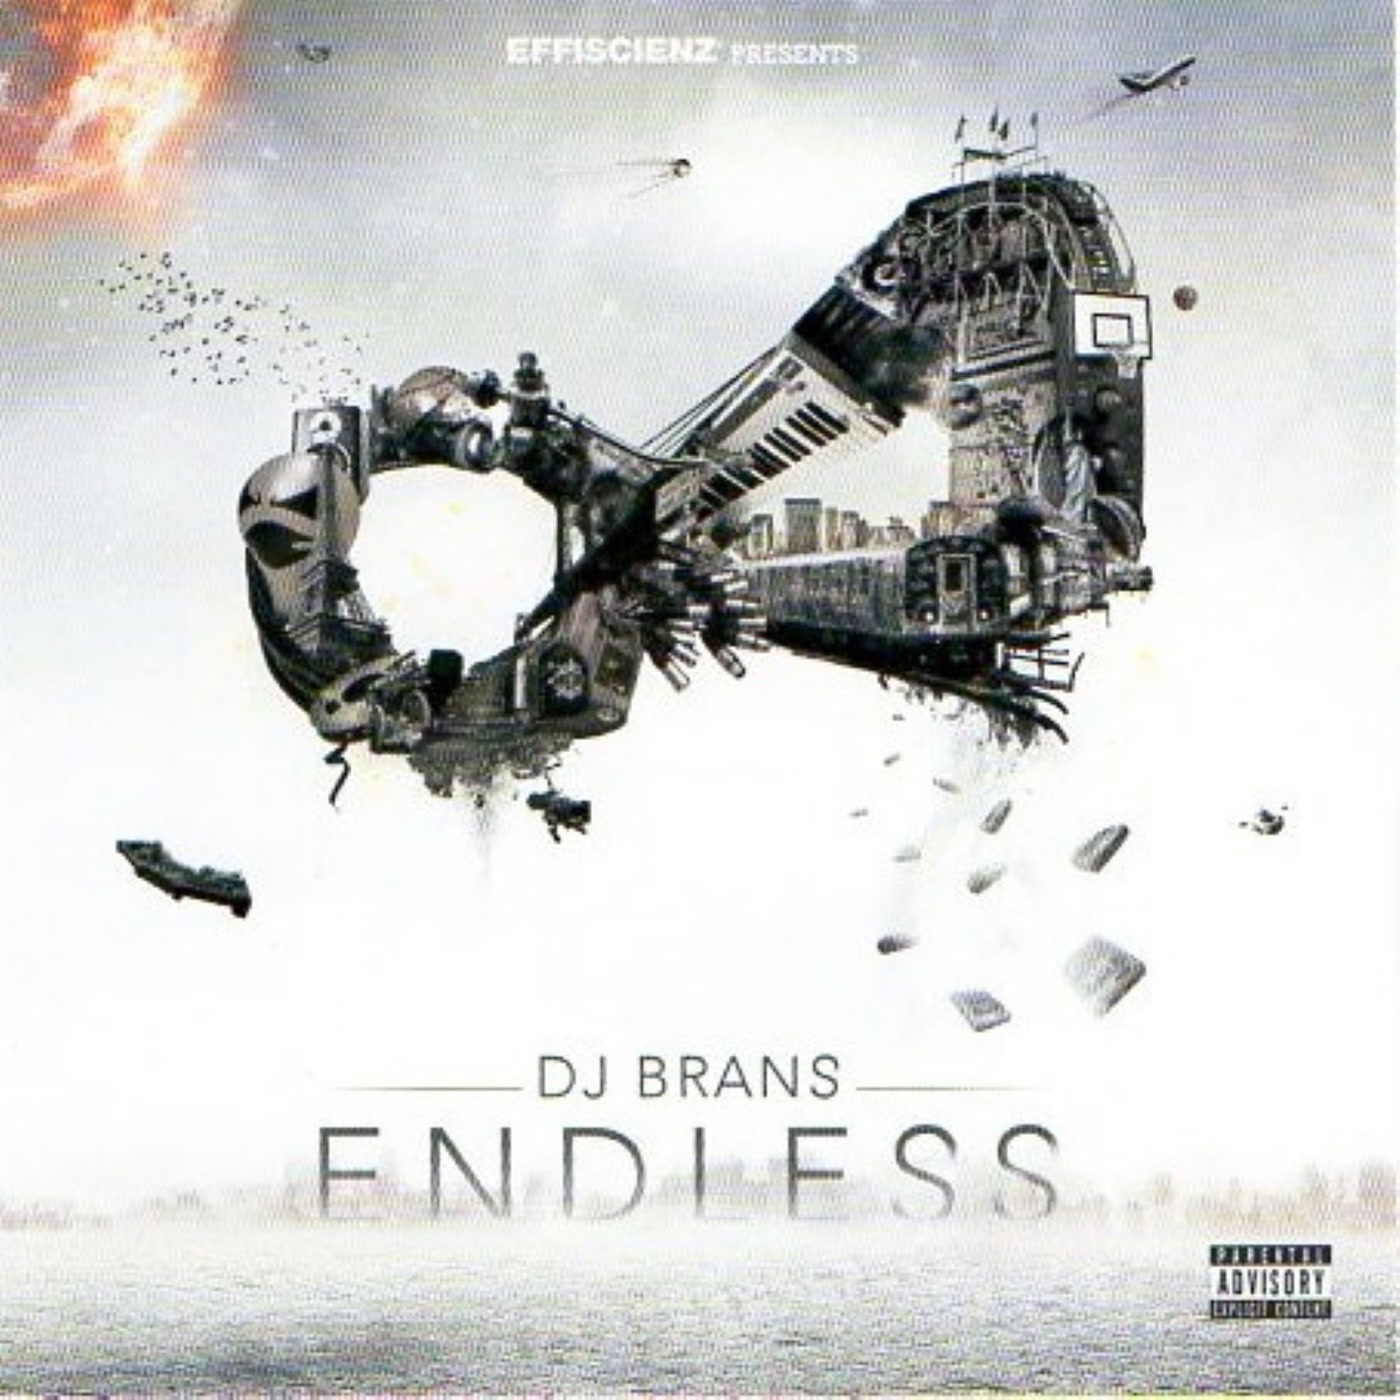 DJ Brans – Endless (Modulor)